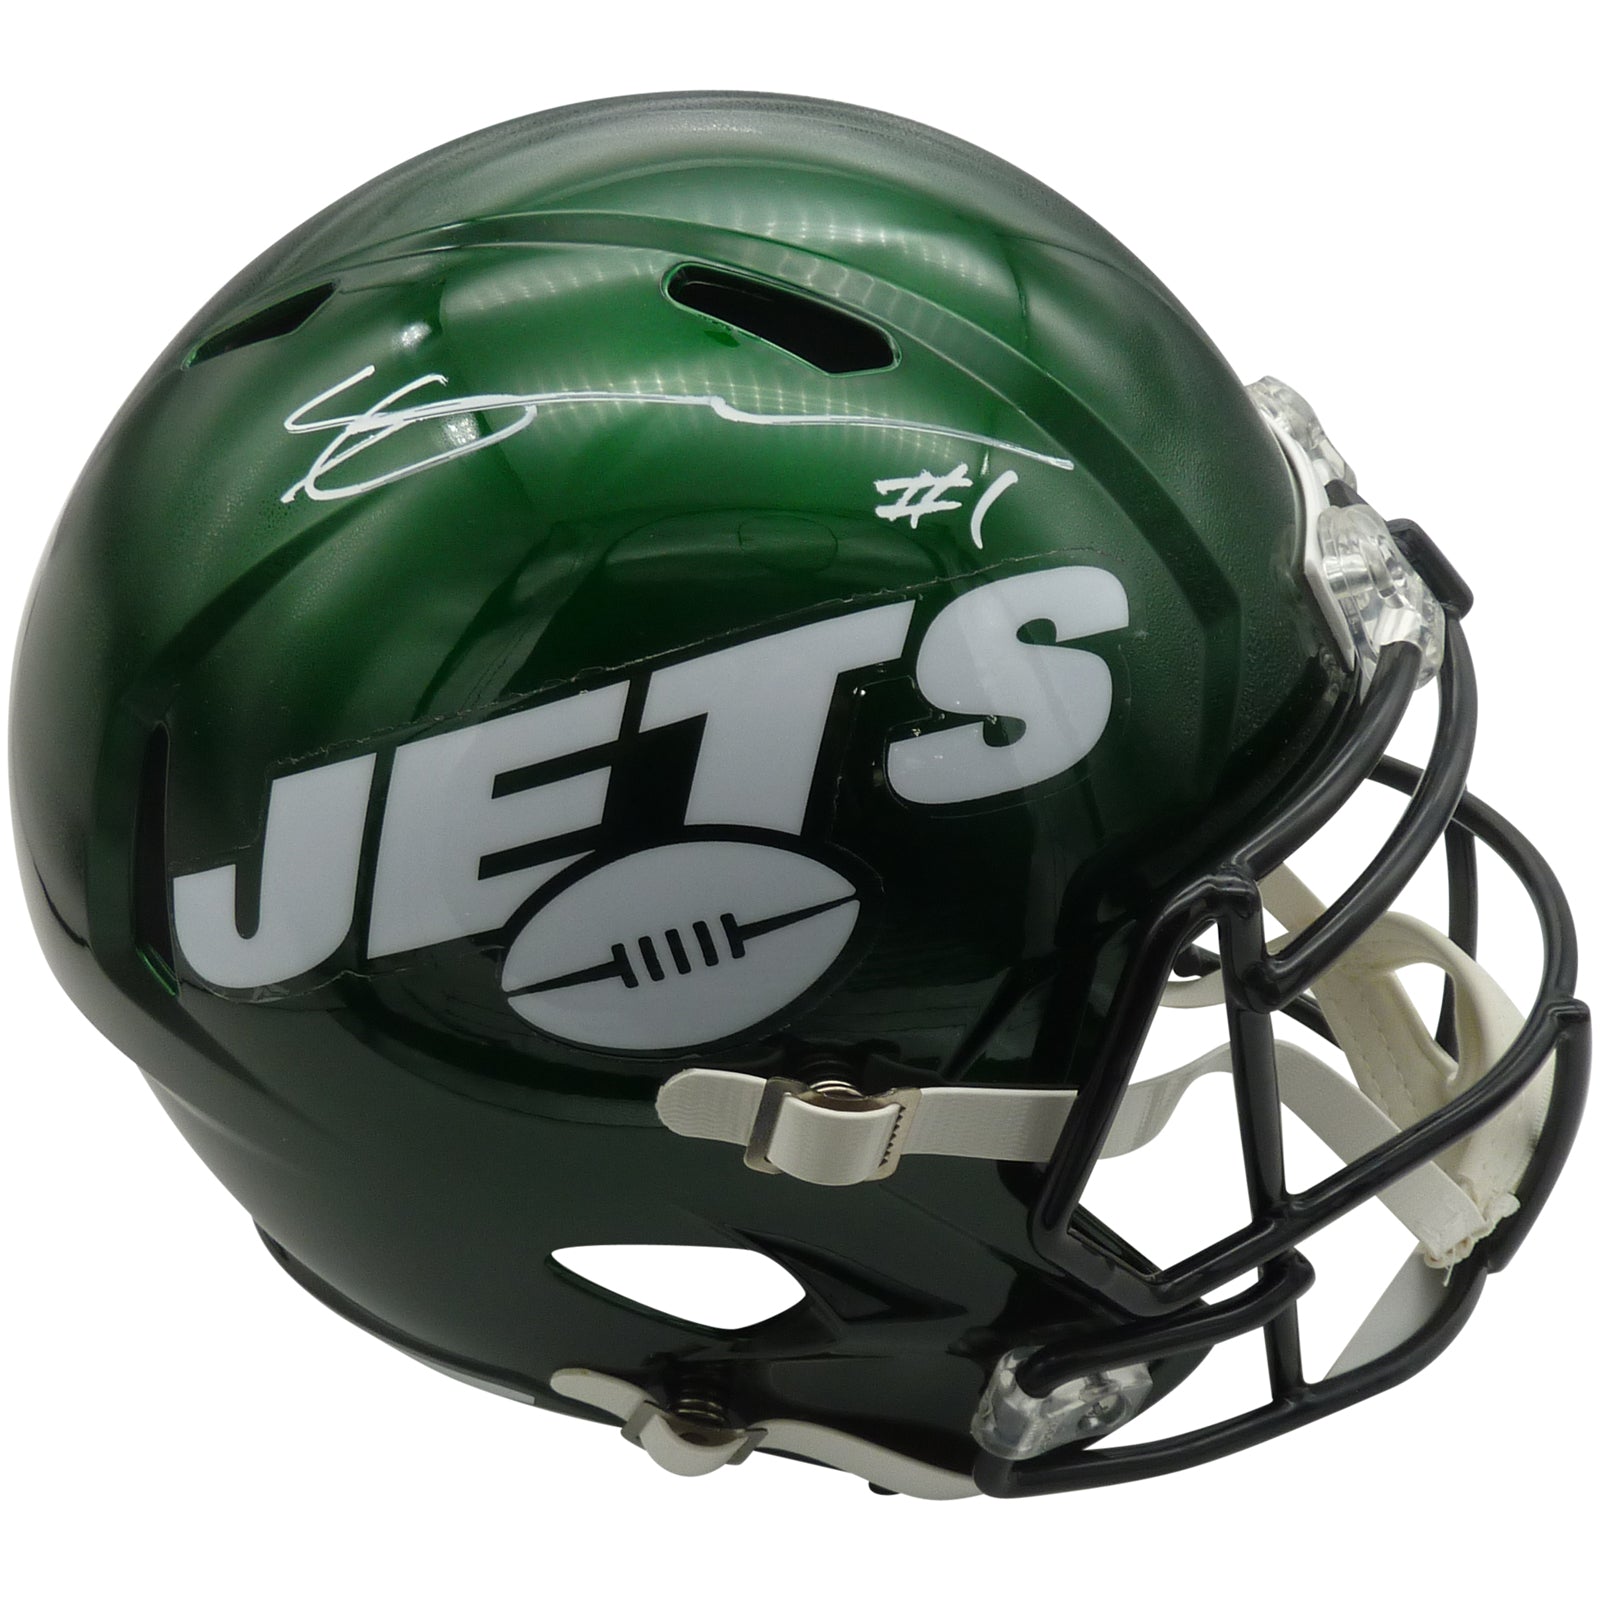 Sauce Gardner Autographed New York Jets Deluxe Full-Size Replica Helmet - Beckett